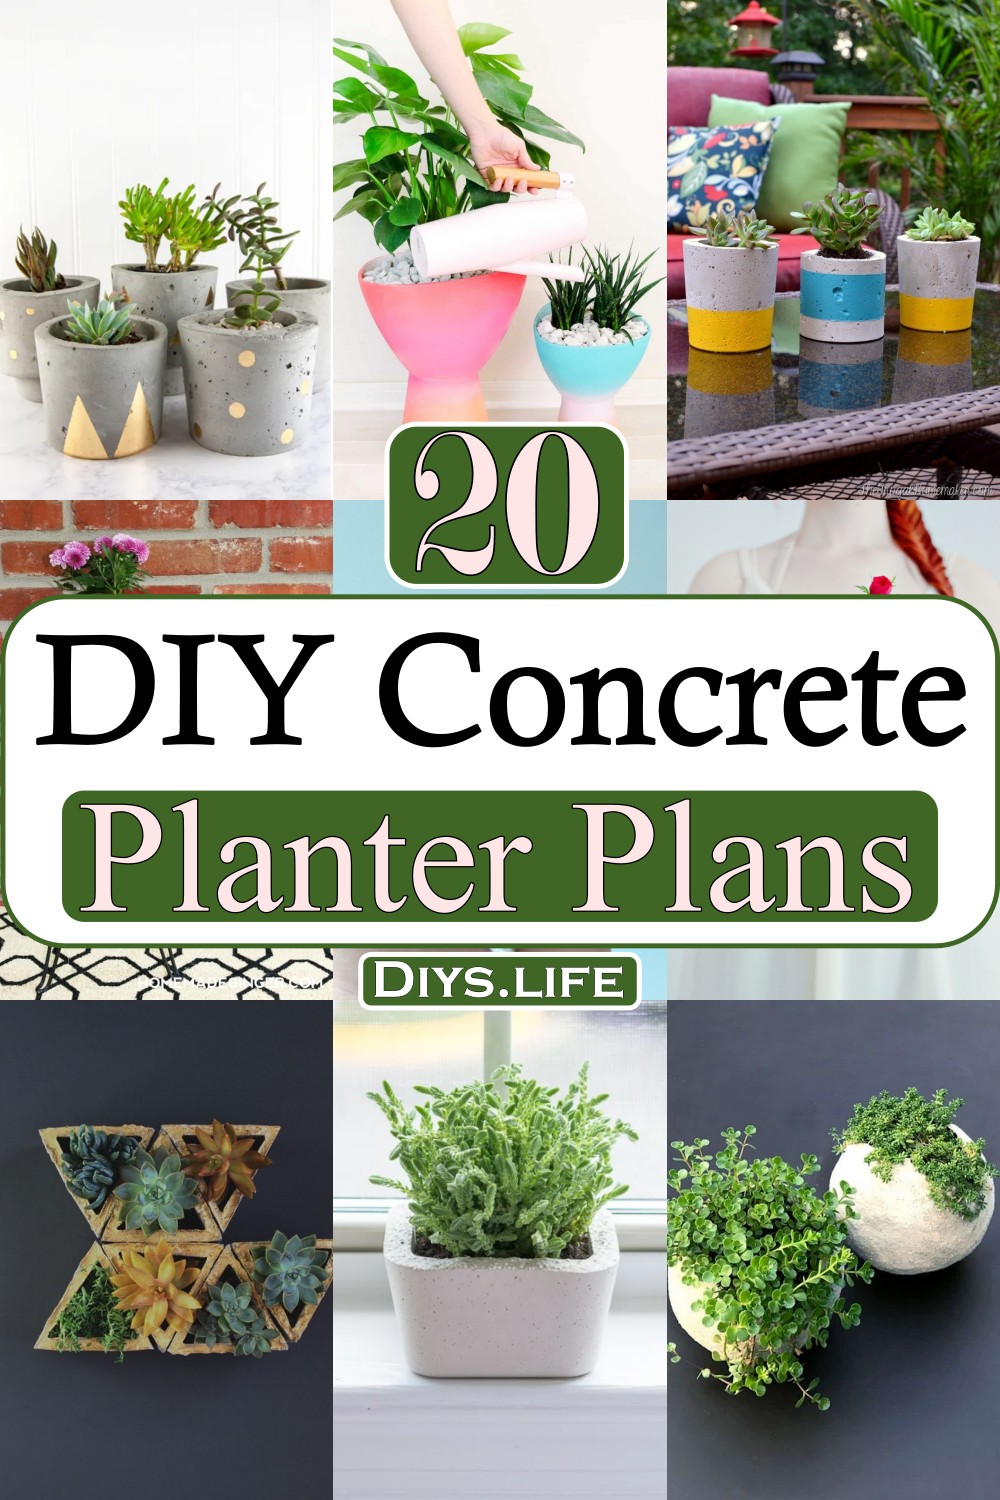 DIY Concrete Planter Plans